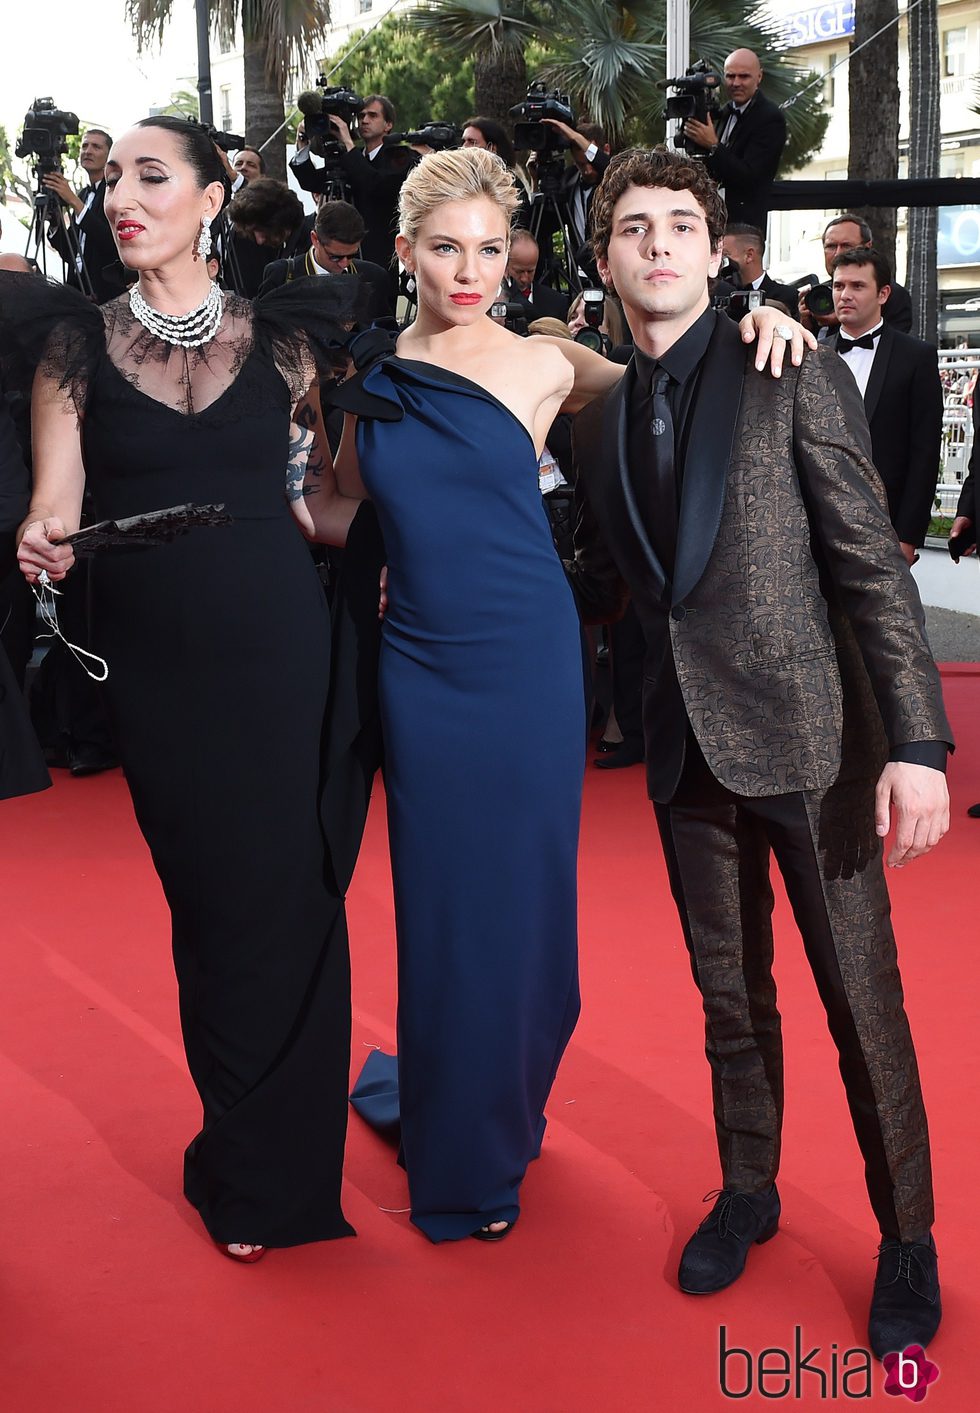 Rossy de Palma, Sienna Miller y Xavier Dolan en la inauguración del Festival de Cannes 2015